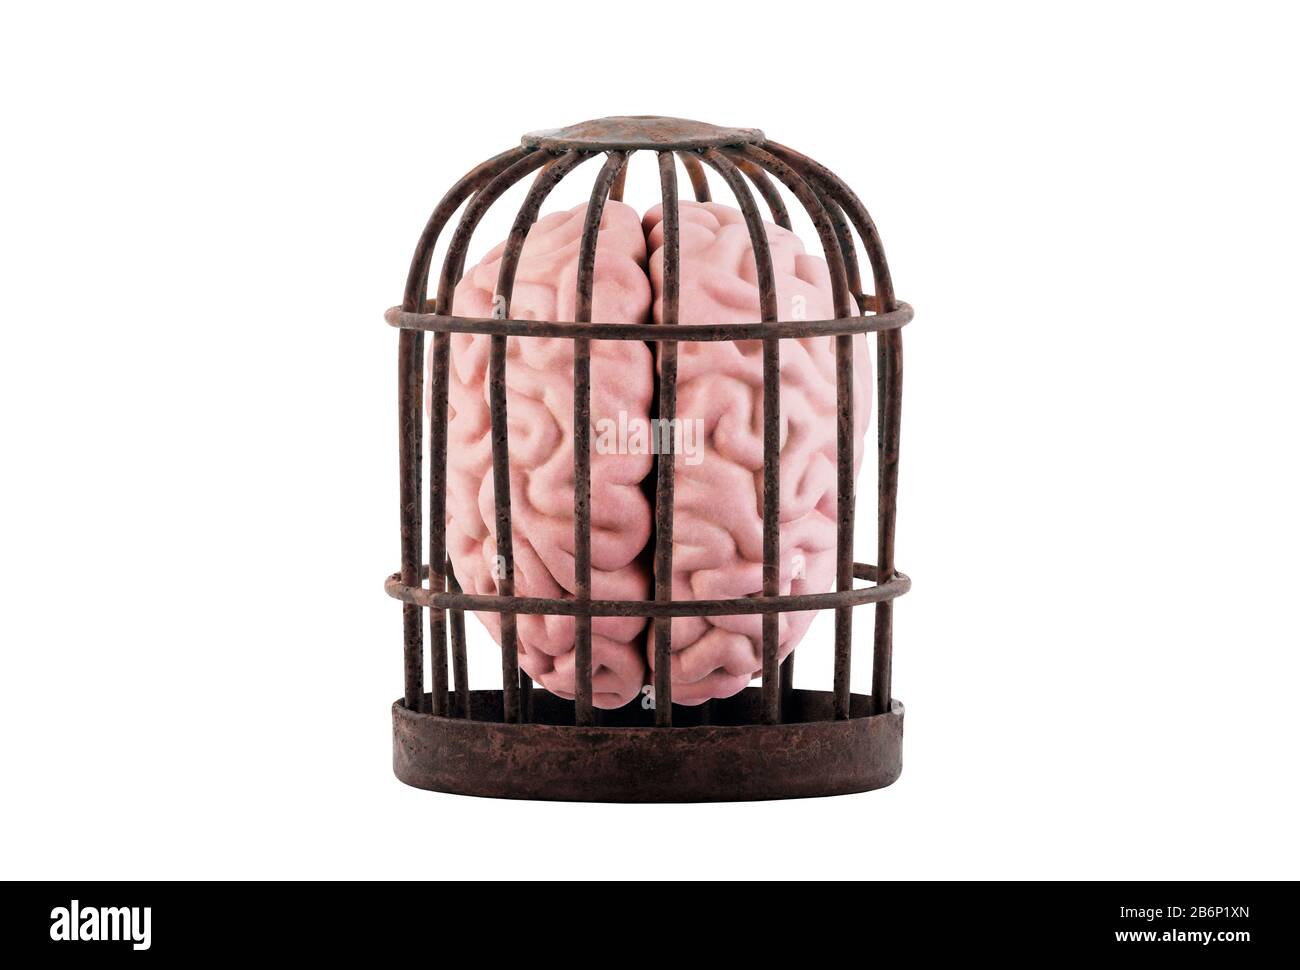 Menschliches Gehirn, das in einem alten, rostigen Käfig gefangen ist, isoliert auf Weiß. Befreien Sie Ihr Mind Konzept. Stockfoto